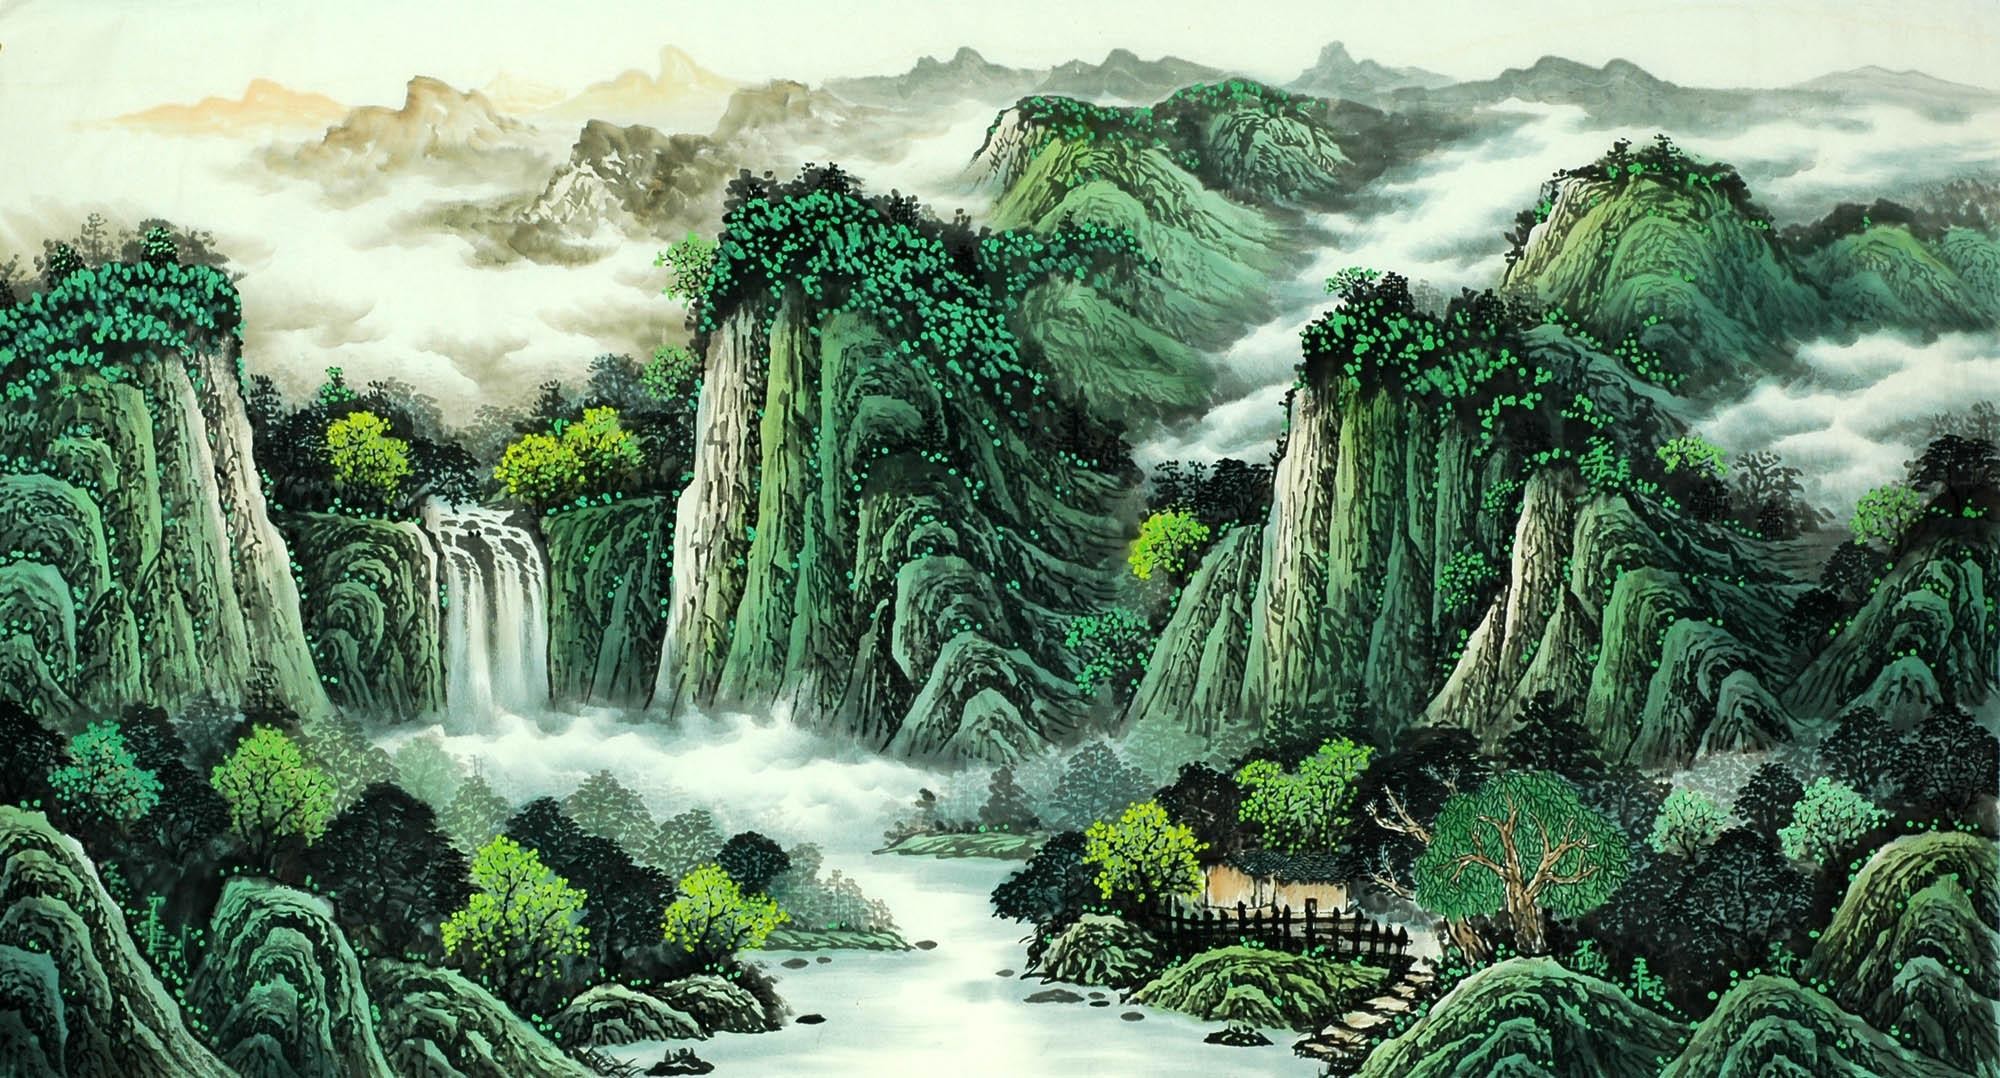 Chinese Landscape Painting - CNAG008103